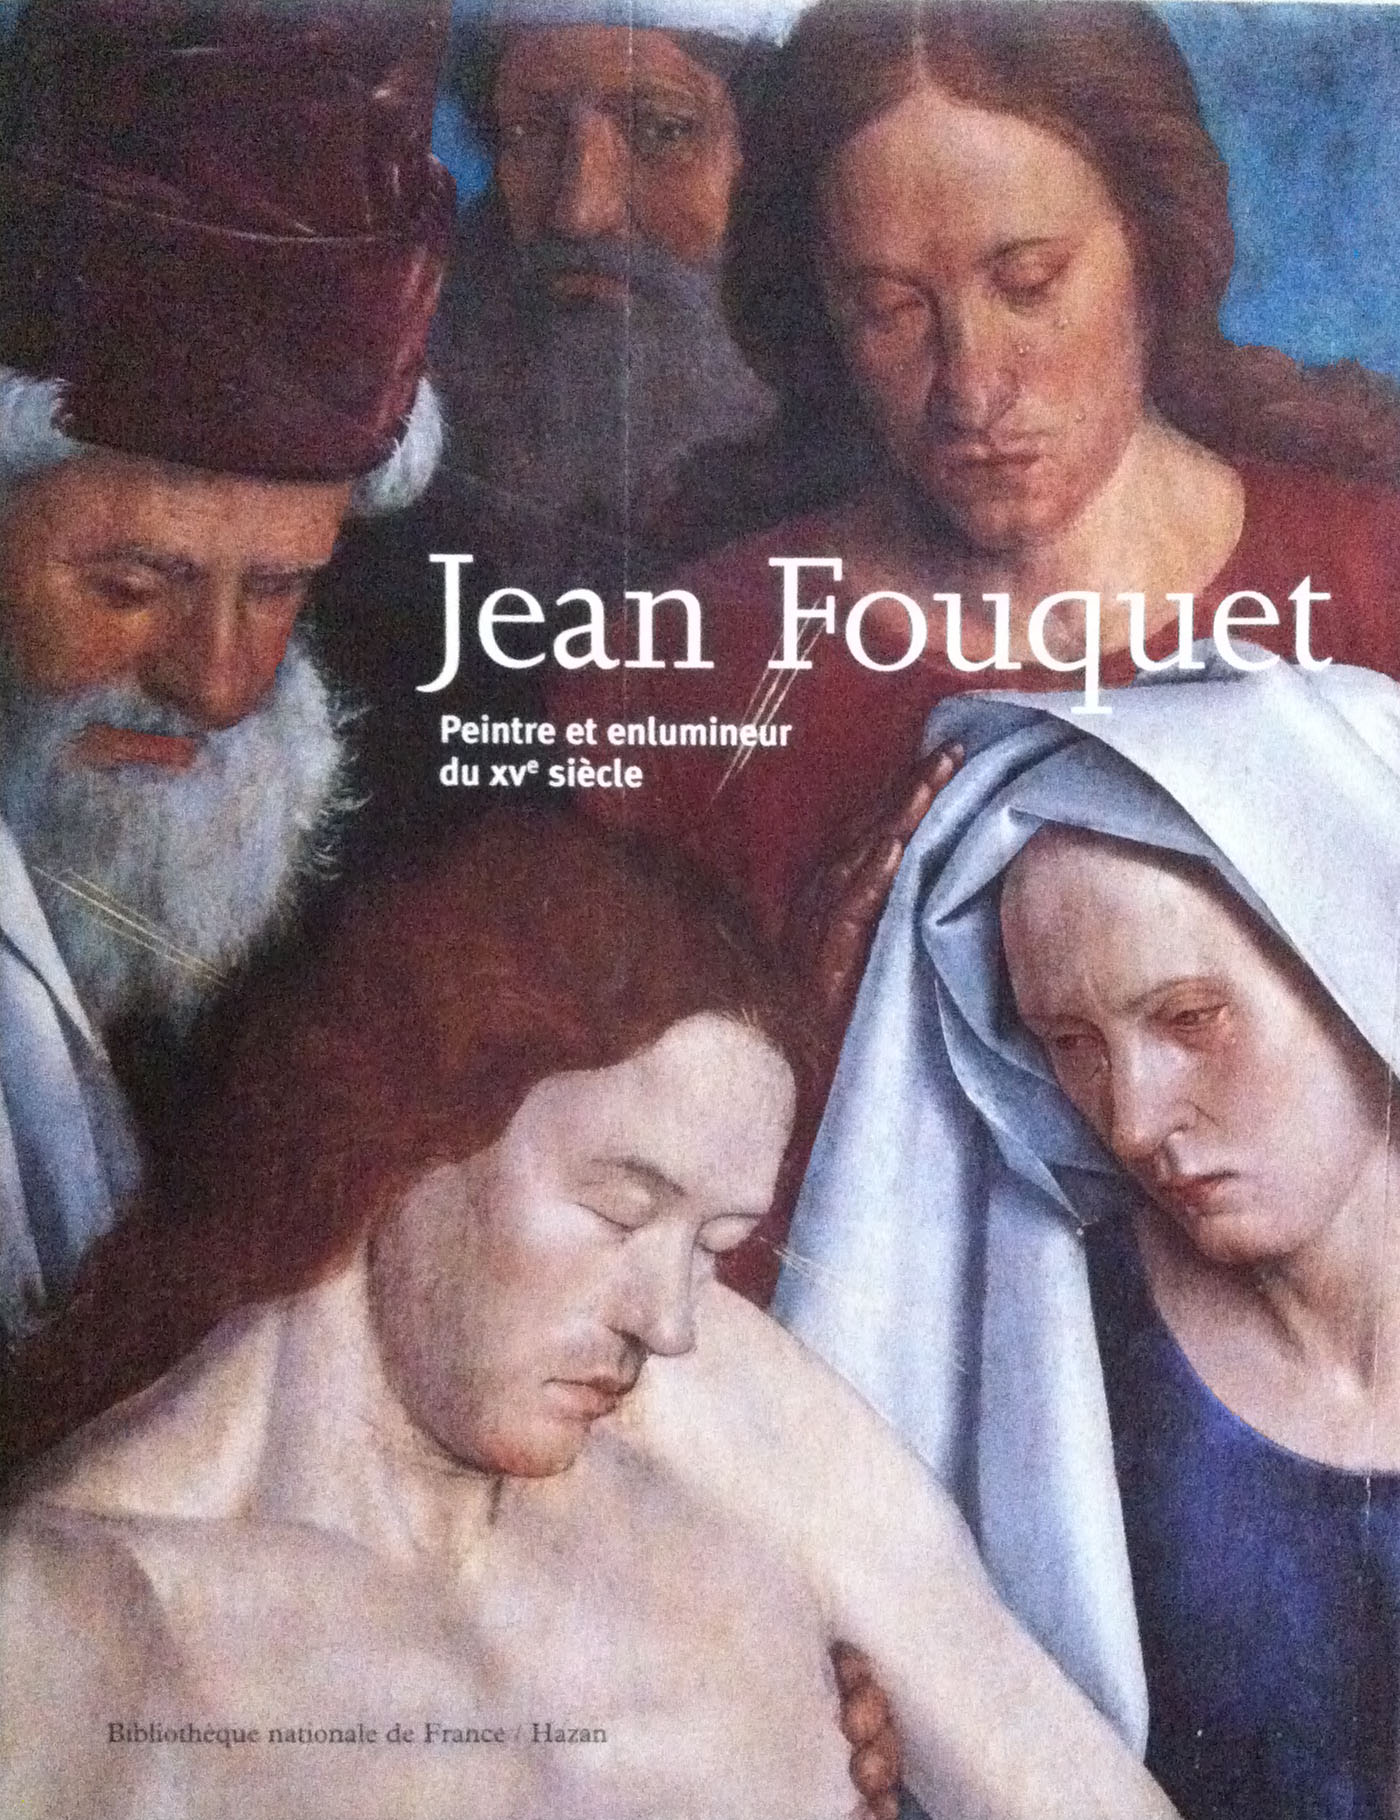 Fouquet, Jean. Peintre et enlumineur du xve siècle.